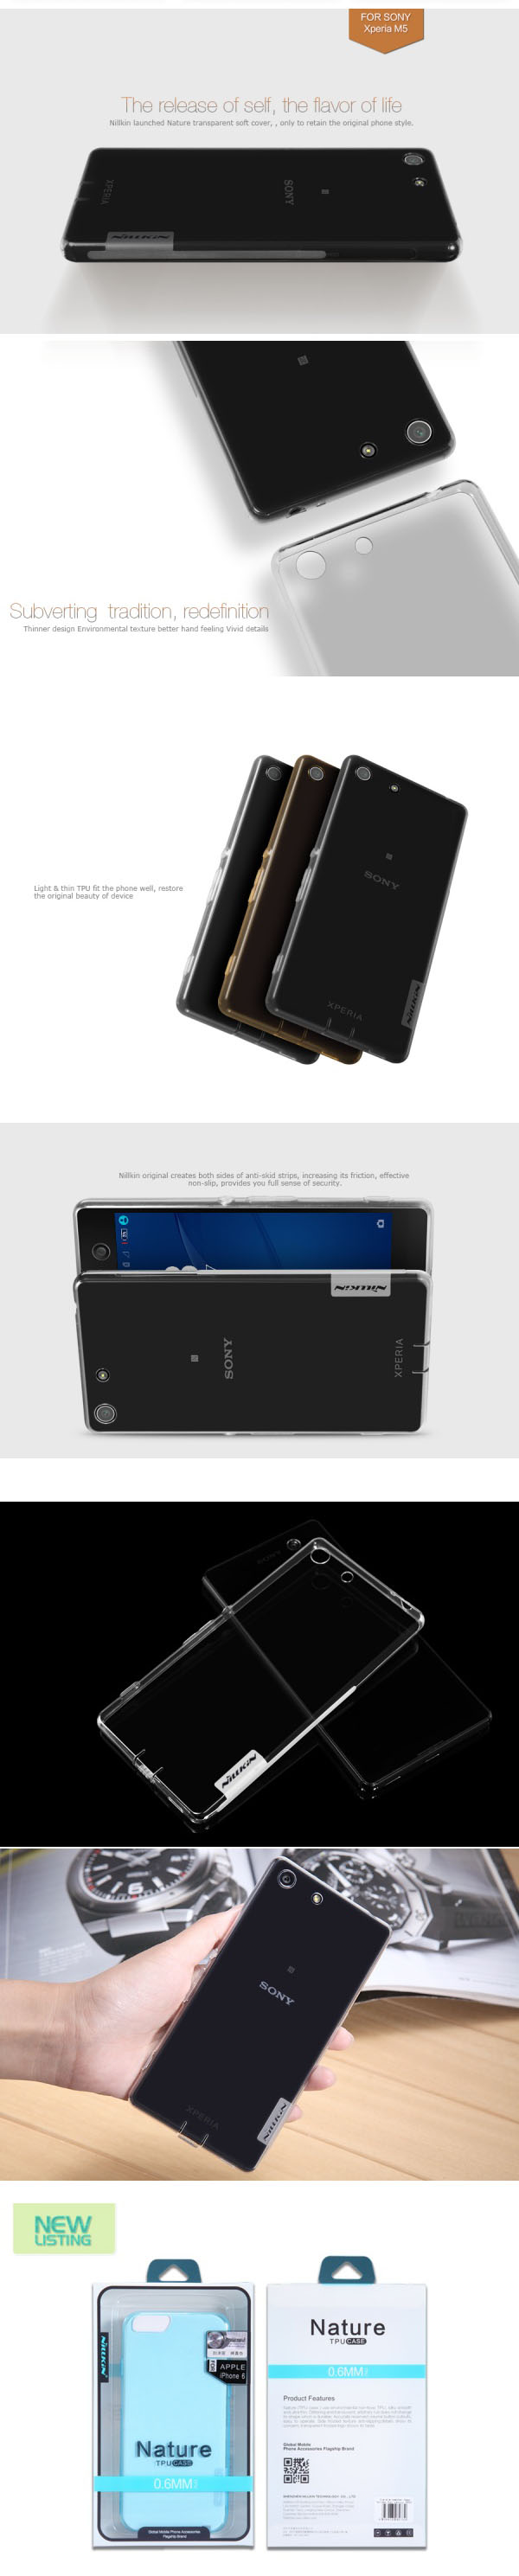 Ốp lưng Sony Xperia M5 Nillkin nhựa dẻo trong suốt 2